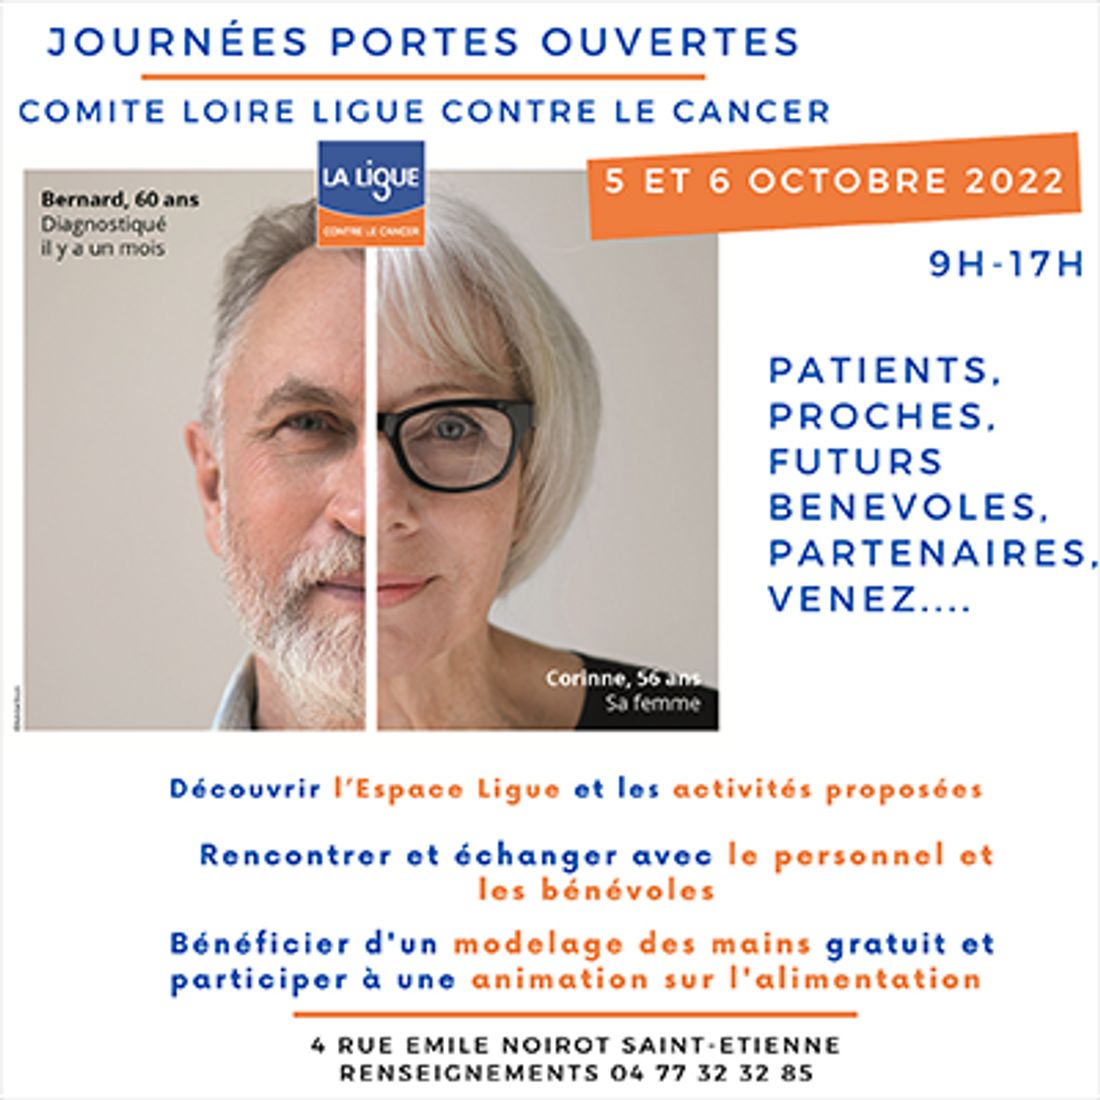 Portes ouvertes au comité Loire de la ligue contre le cancer